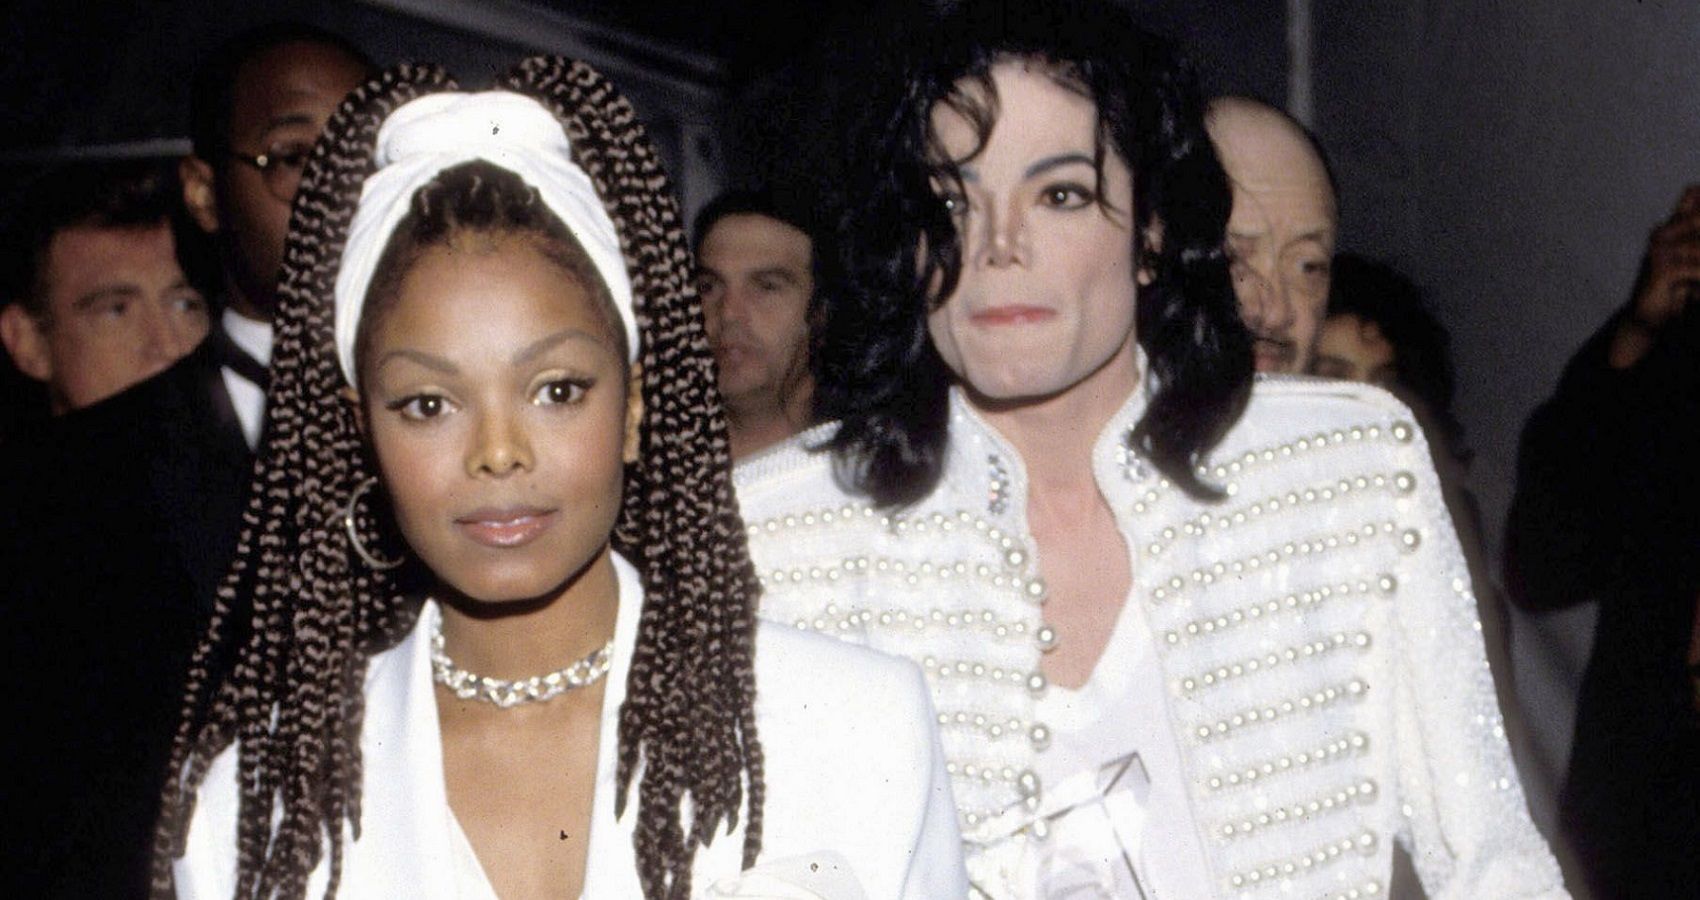 O casamento de Janet Jackson acabou por causa de seu irmão?